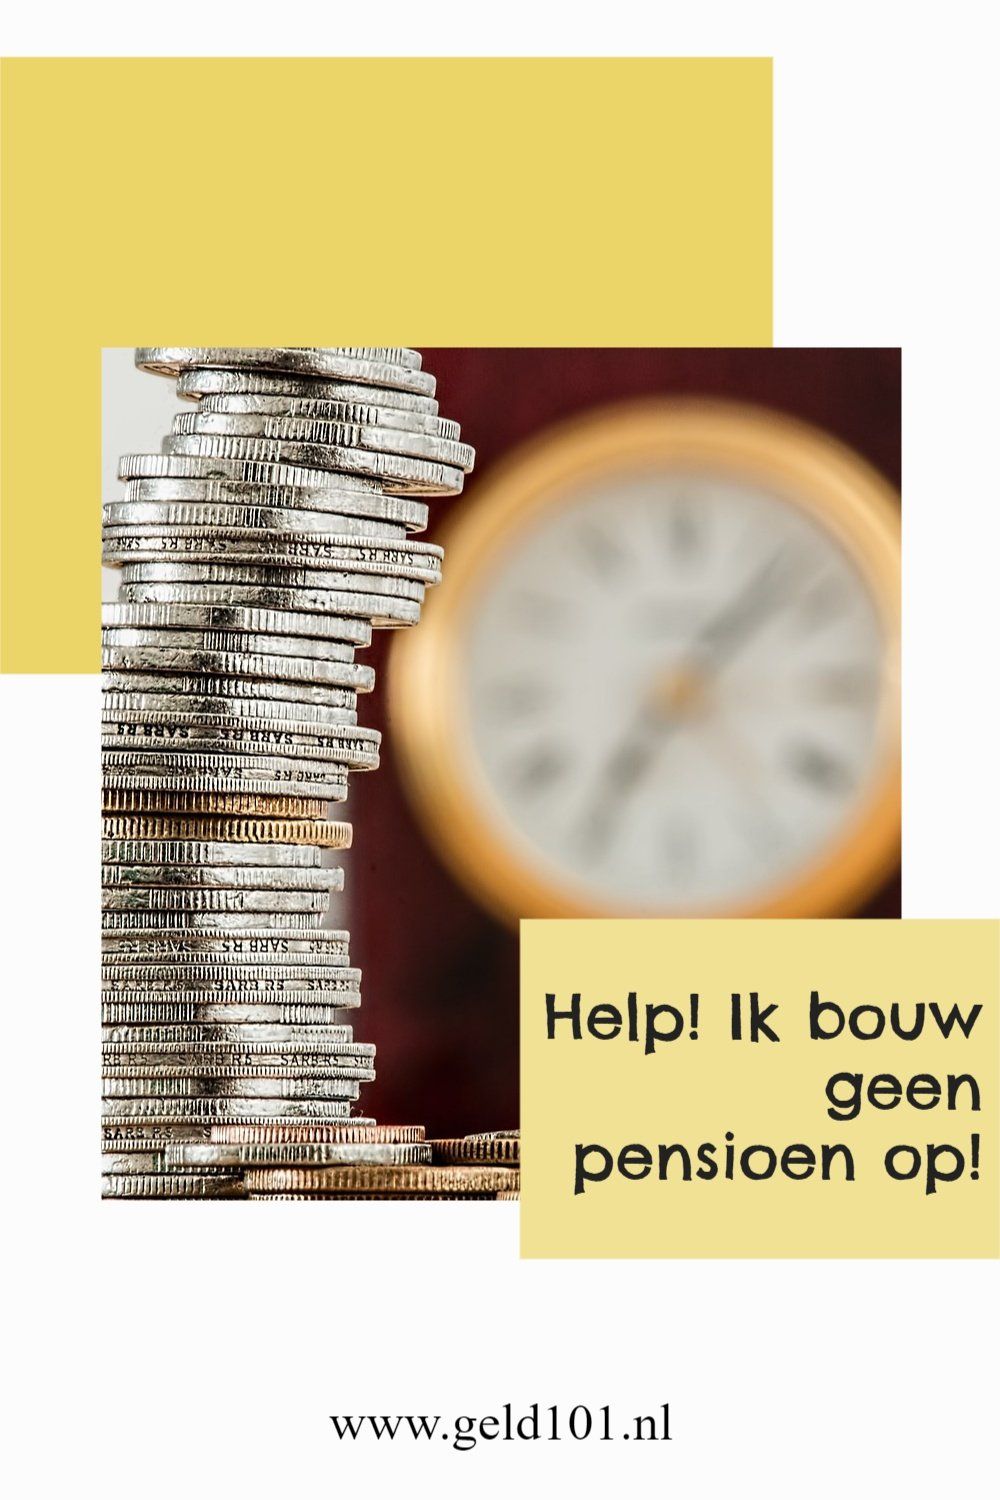 pensioen opbouwen nederlands pensioenstelsel beleggen